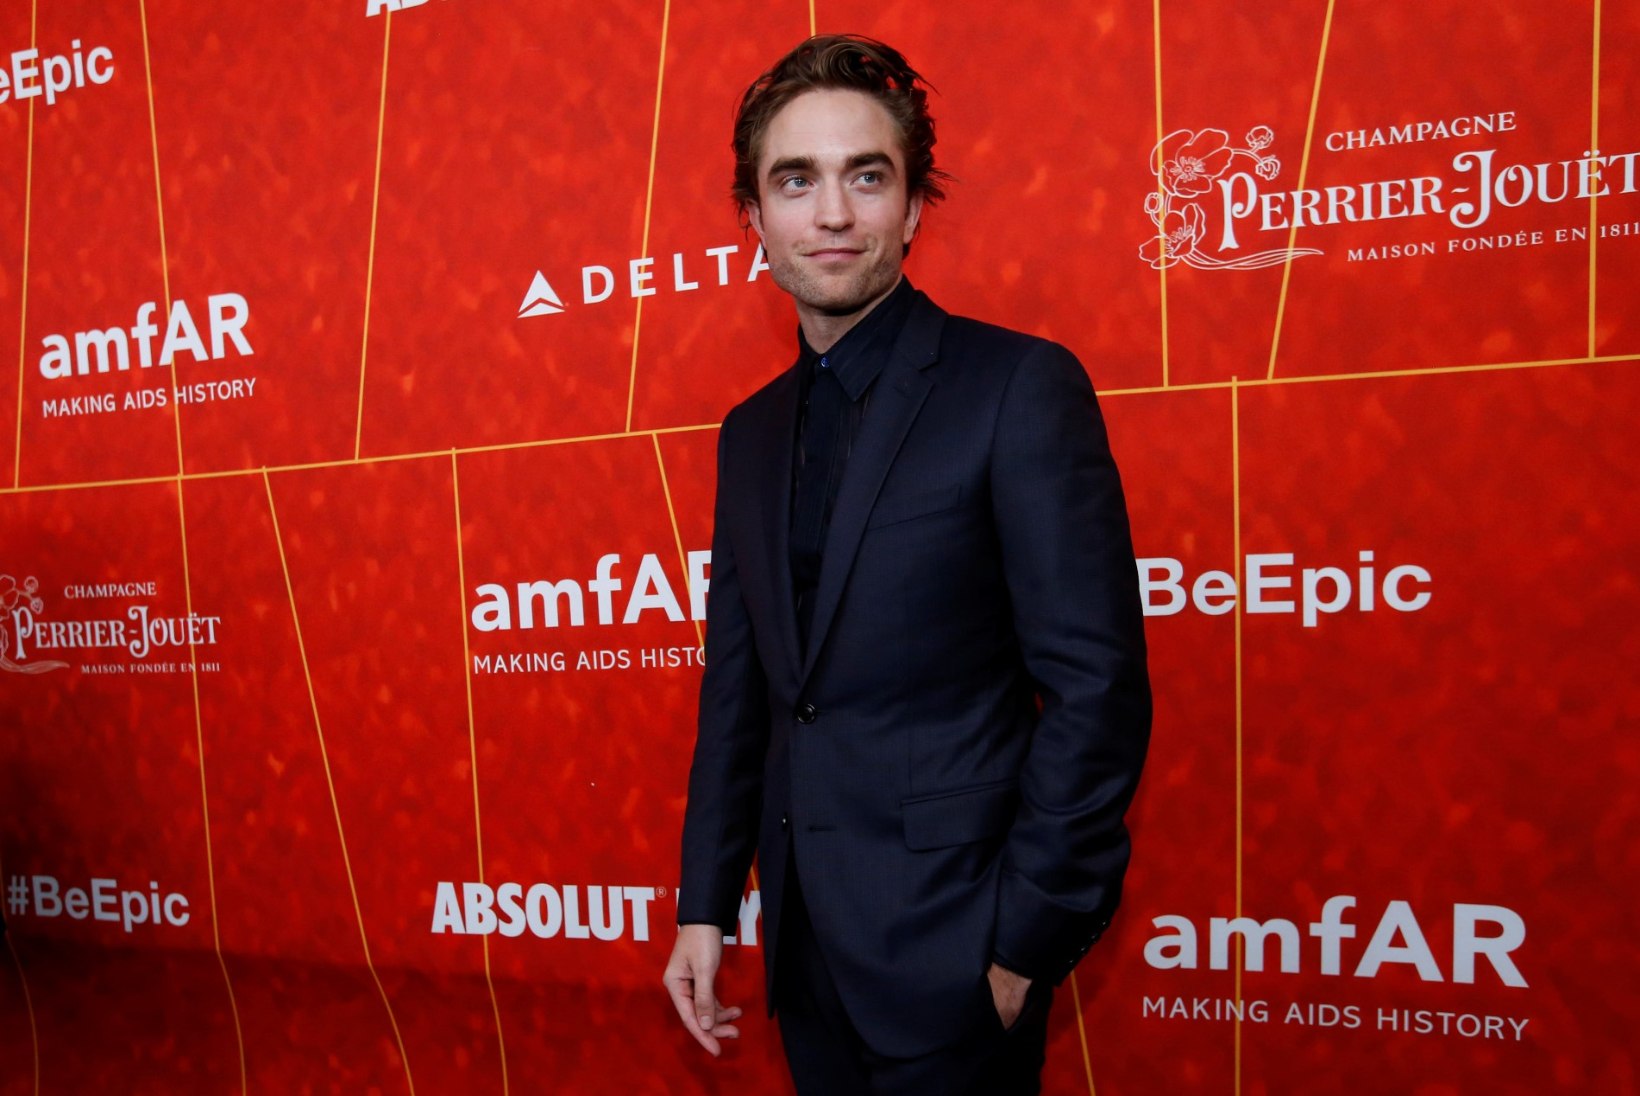 Koroonast tervenenud Robert Pattinson naasis Batmani-filmi võtetele